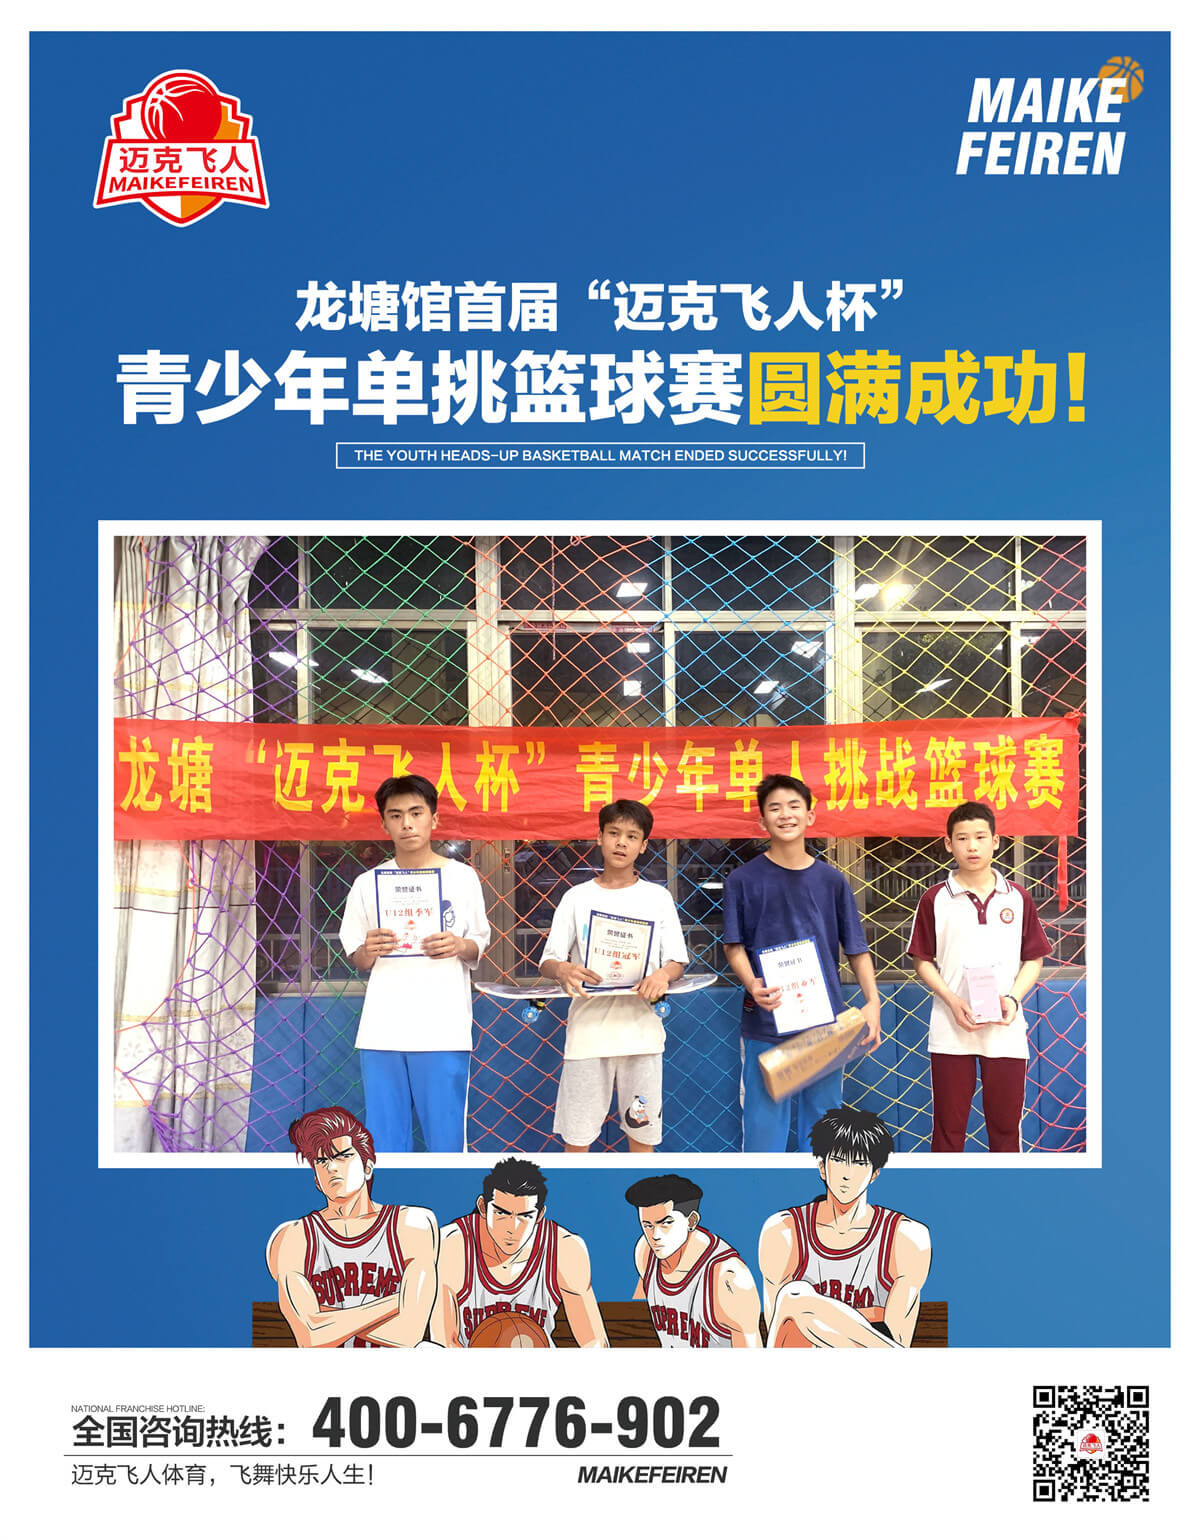 祝贺广东龙塘馆首届“迈克飞人杯”青少年单挑篮球赛圆满成功！